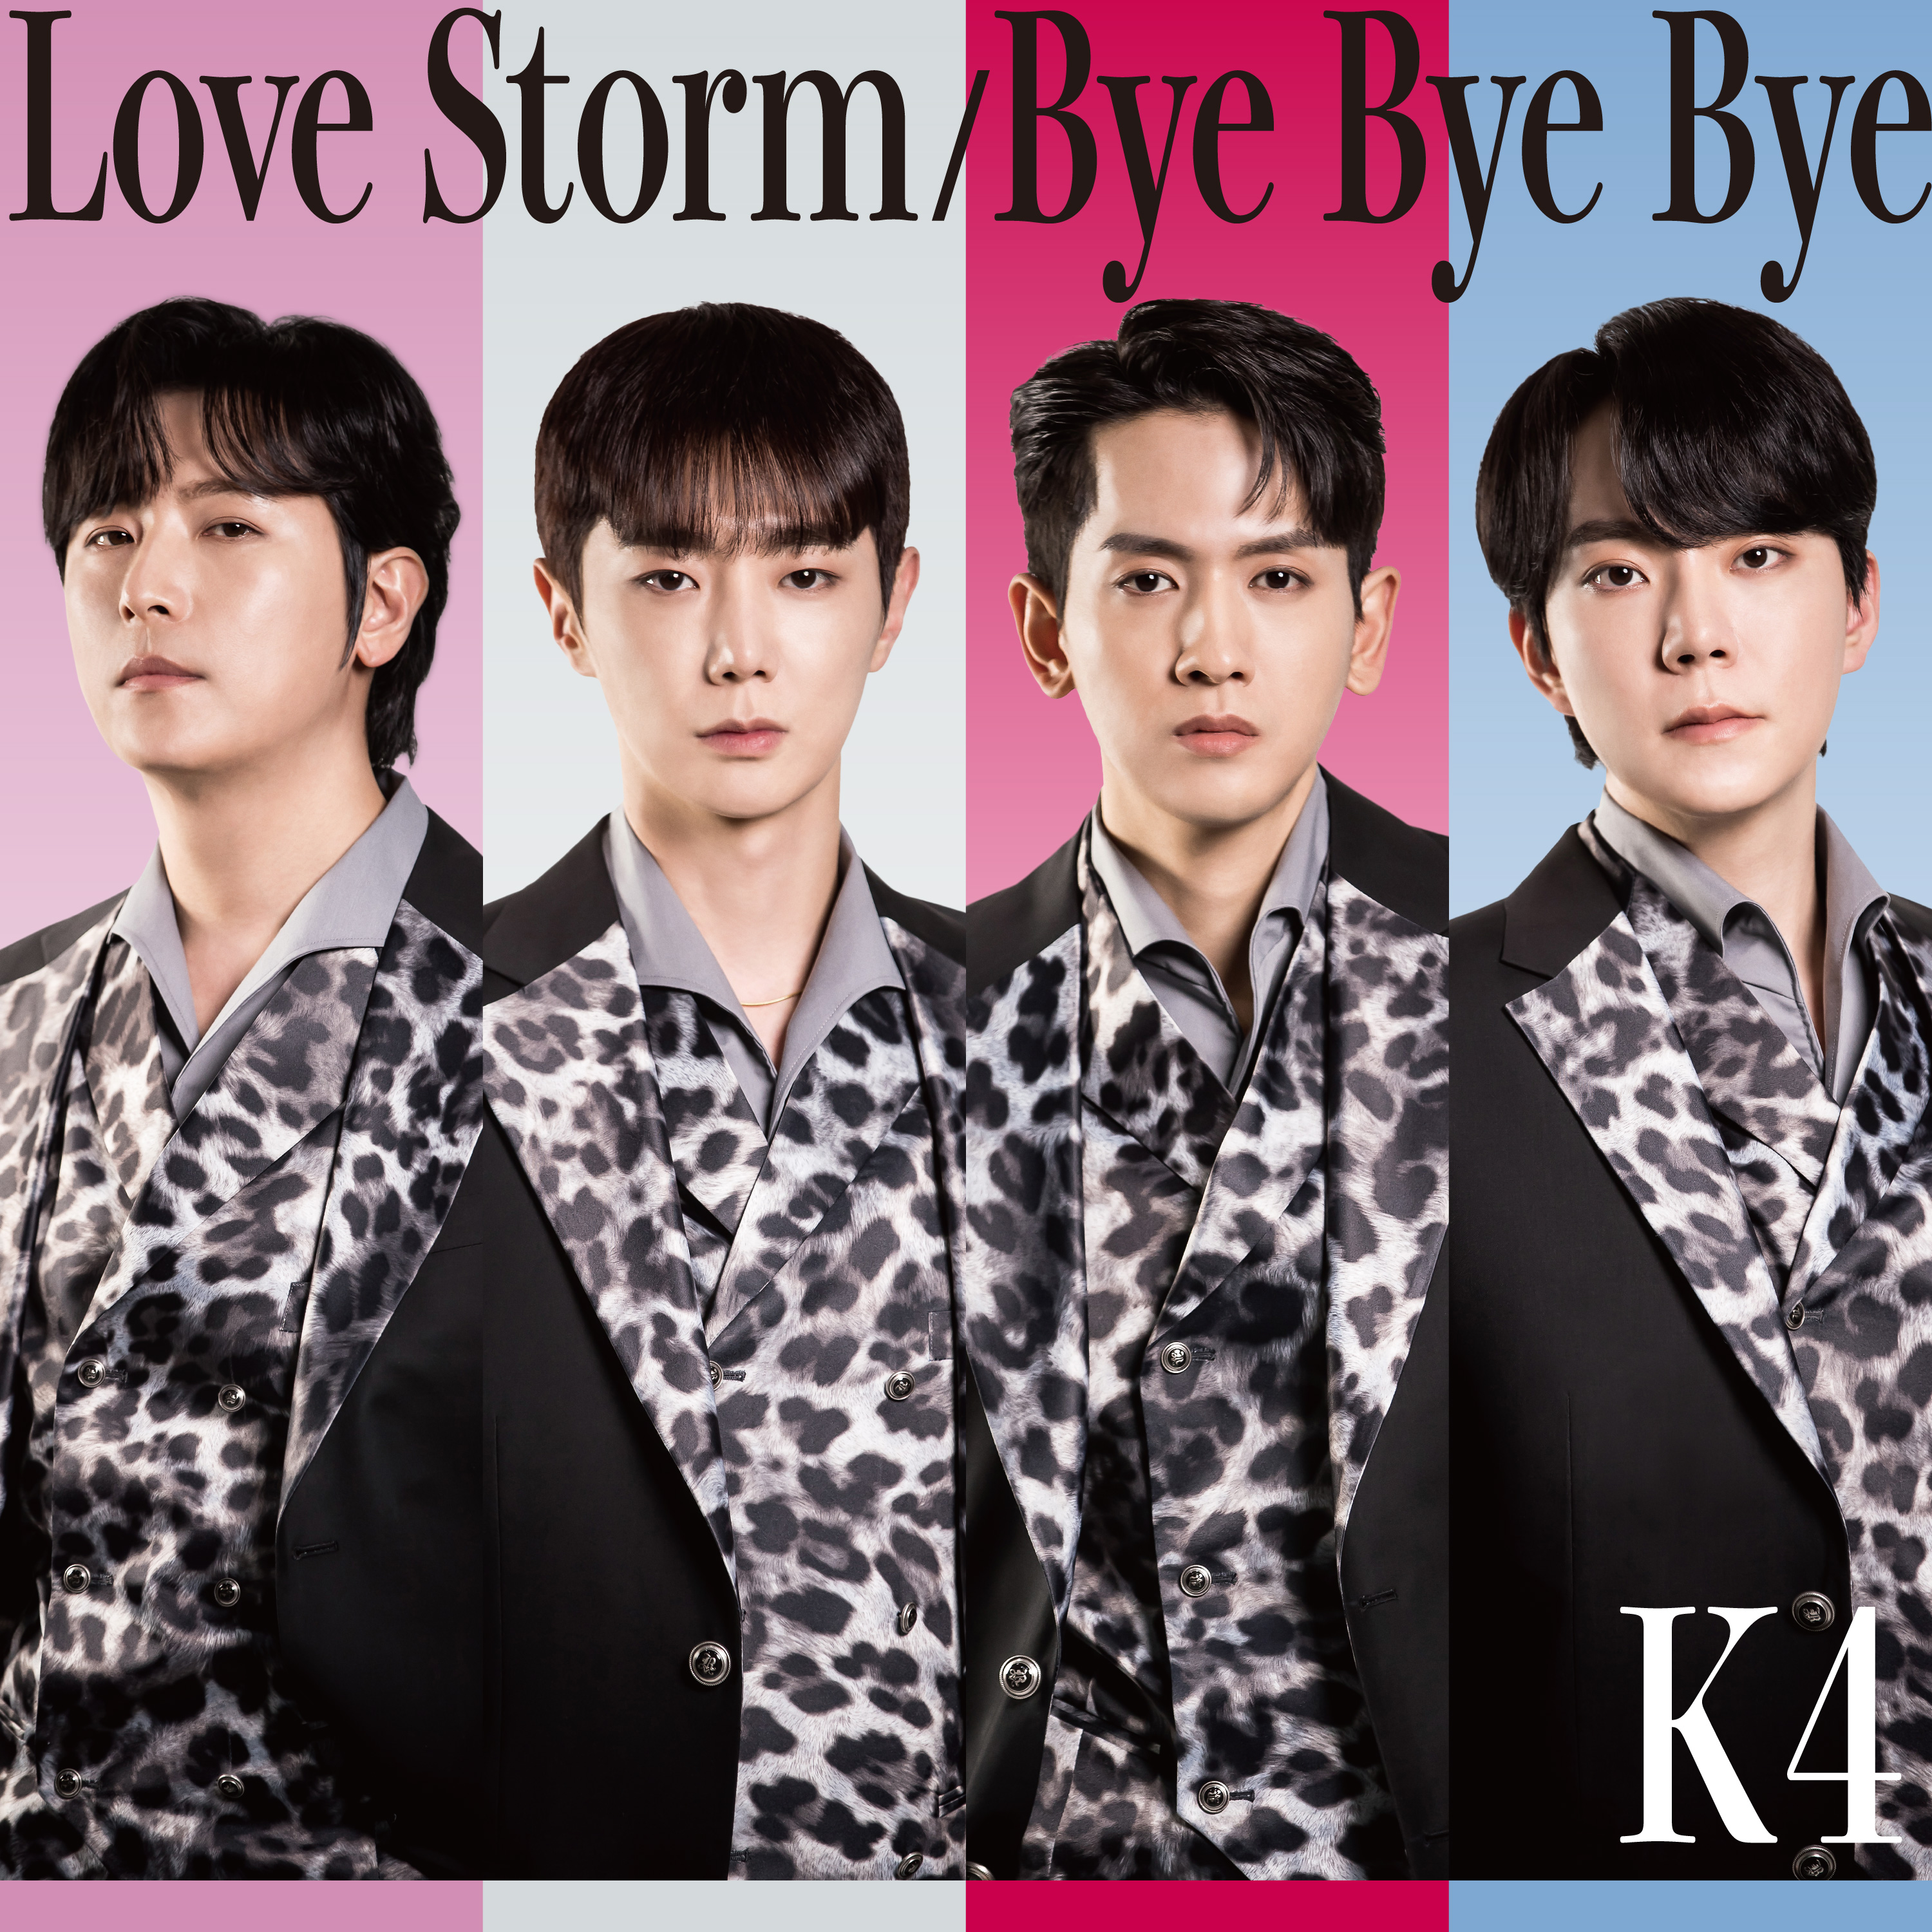 2作連続快挙達成!!!!ADULT K-POPグループK4日本デビューシングル「Love Storm -Japanese version-」のサブ画像1_K4日本デビューシングル「Love Storm  Bye Bye Bye」